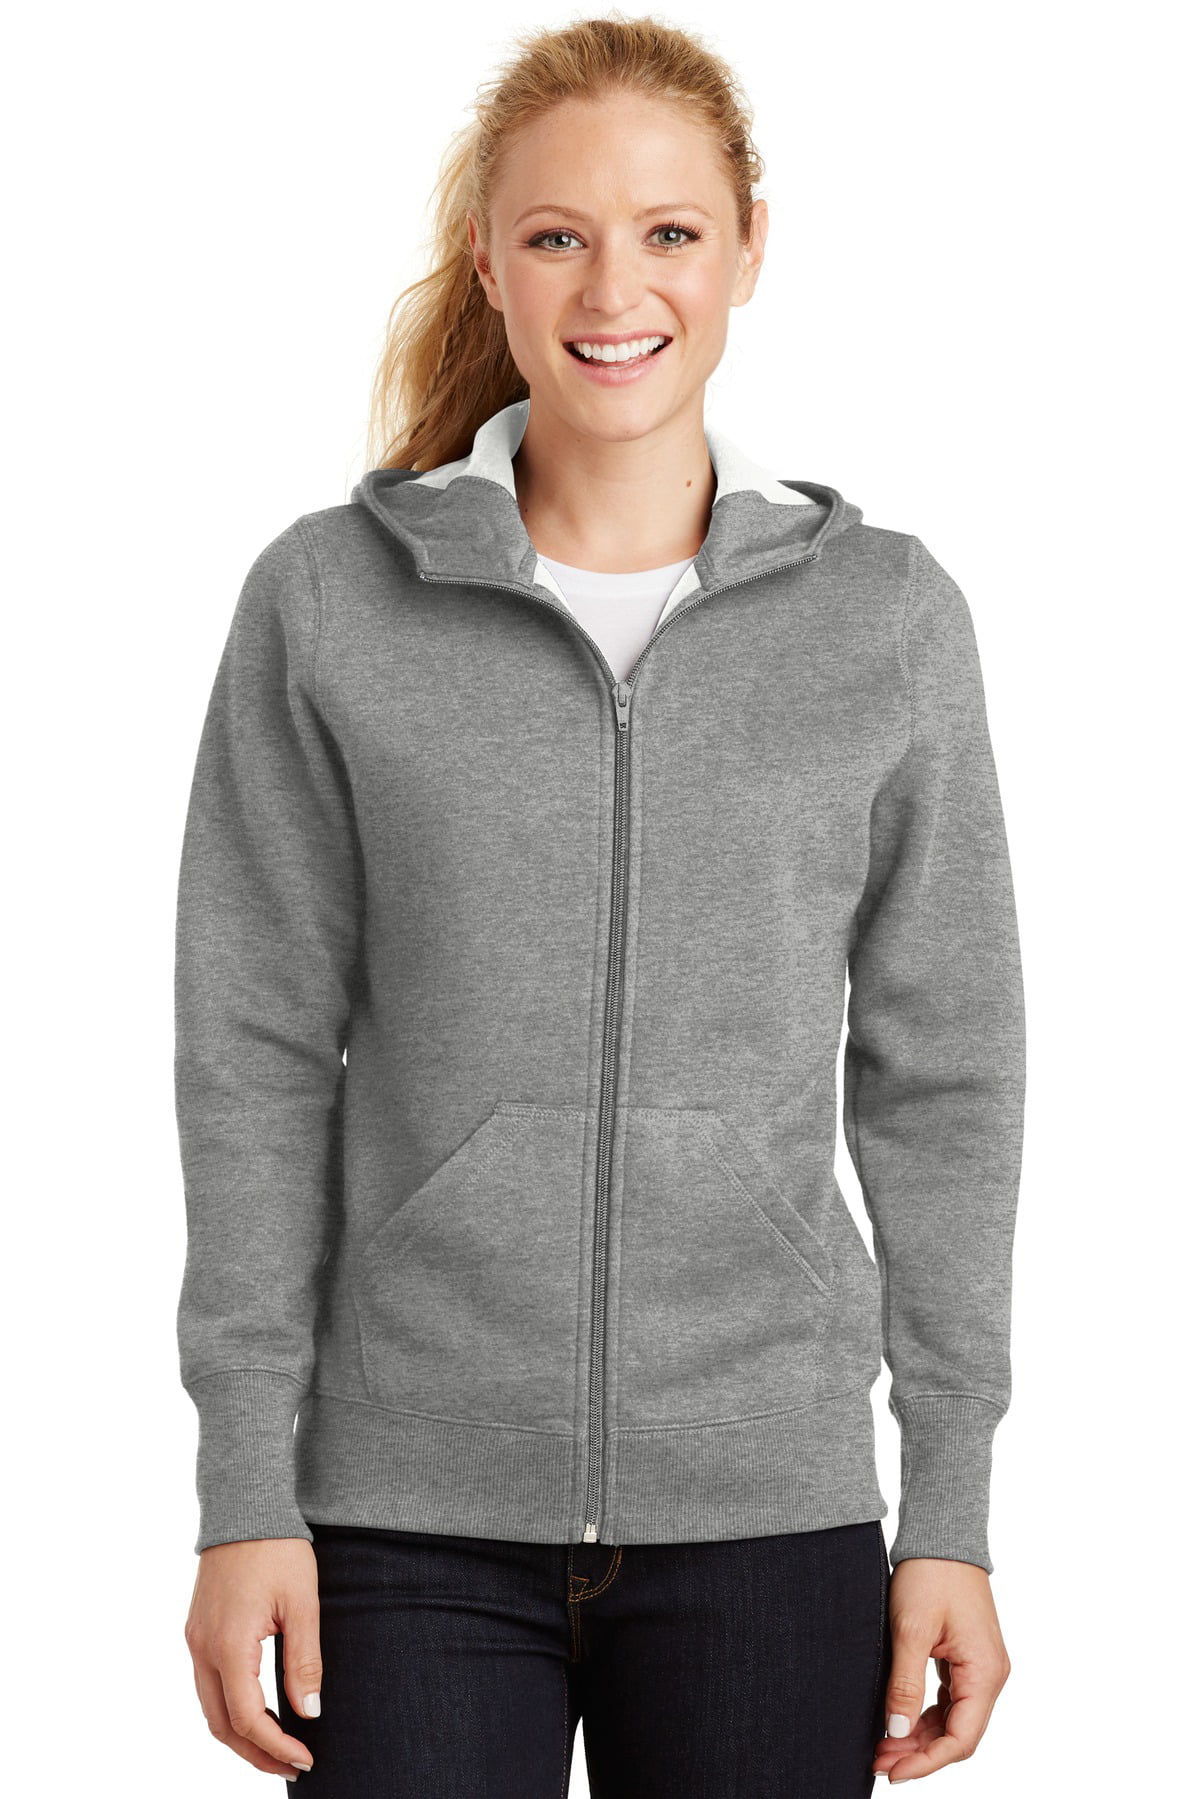 Sport-Tek Ladies Full-Zip Hooded Fleece Jacket - Walmart.com